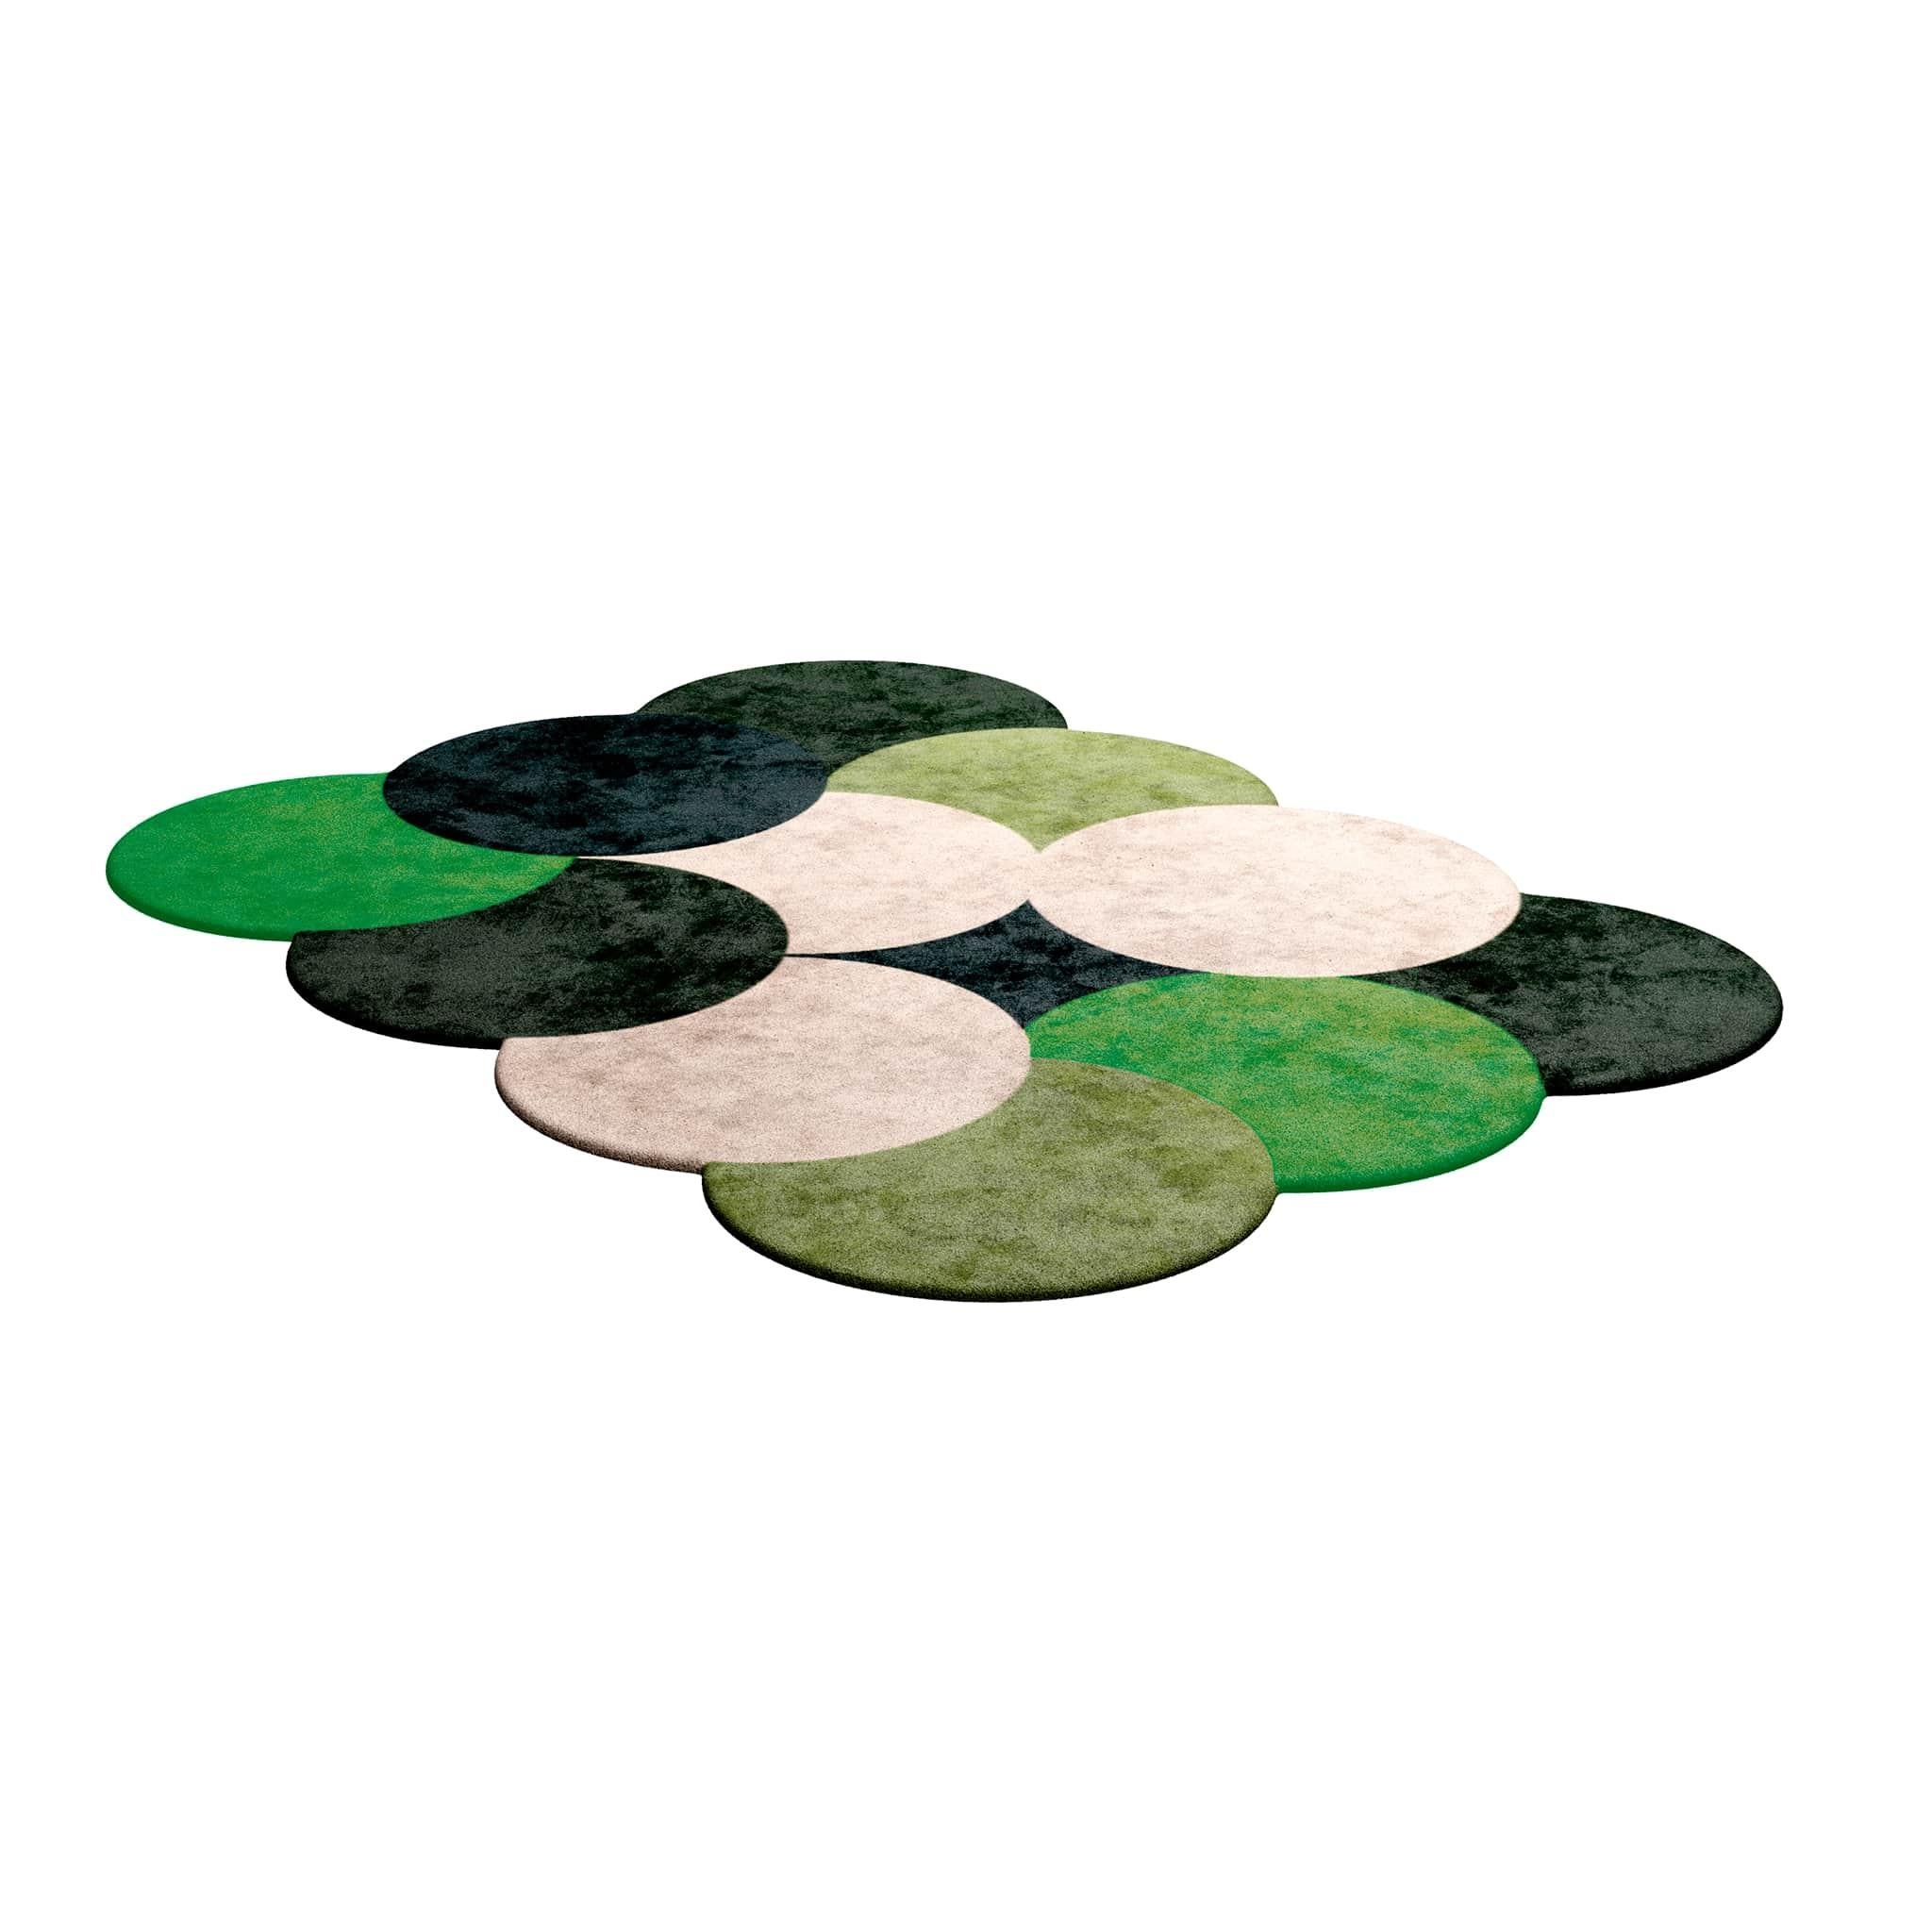 Tapis rectangulaire à motifs circulaires, touffeté à la main, The Moderns & Greene, vert 
Tapis Shaped #050 est un tapis vert faisant partie d'une collection de tapis tendance avec un flair moderne pour des intérieurs intemporels.
Avec une palette